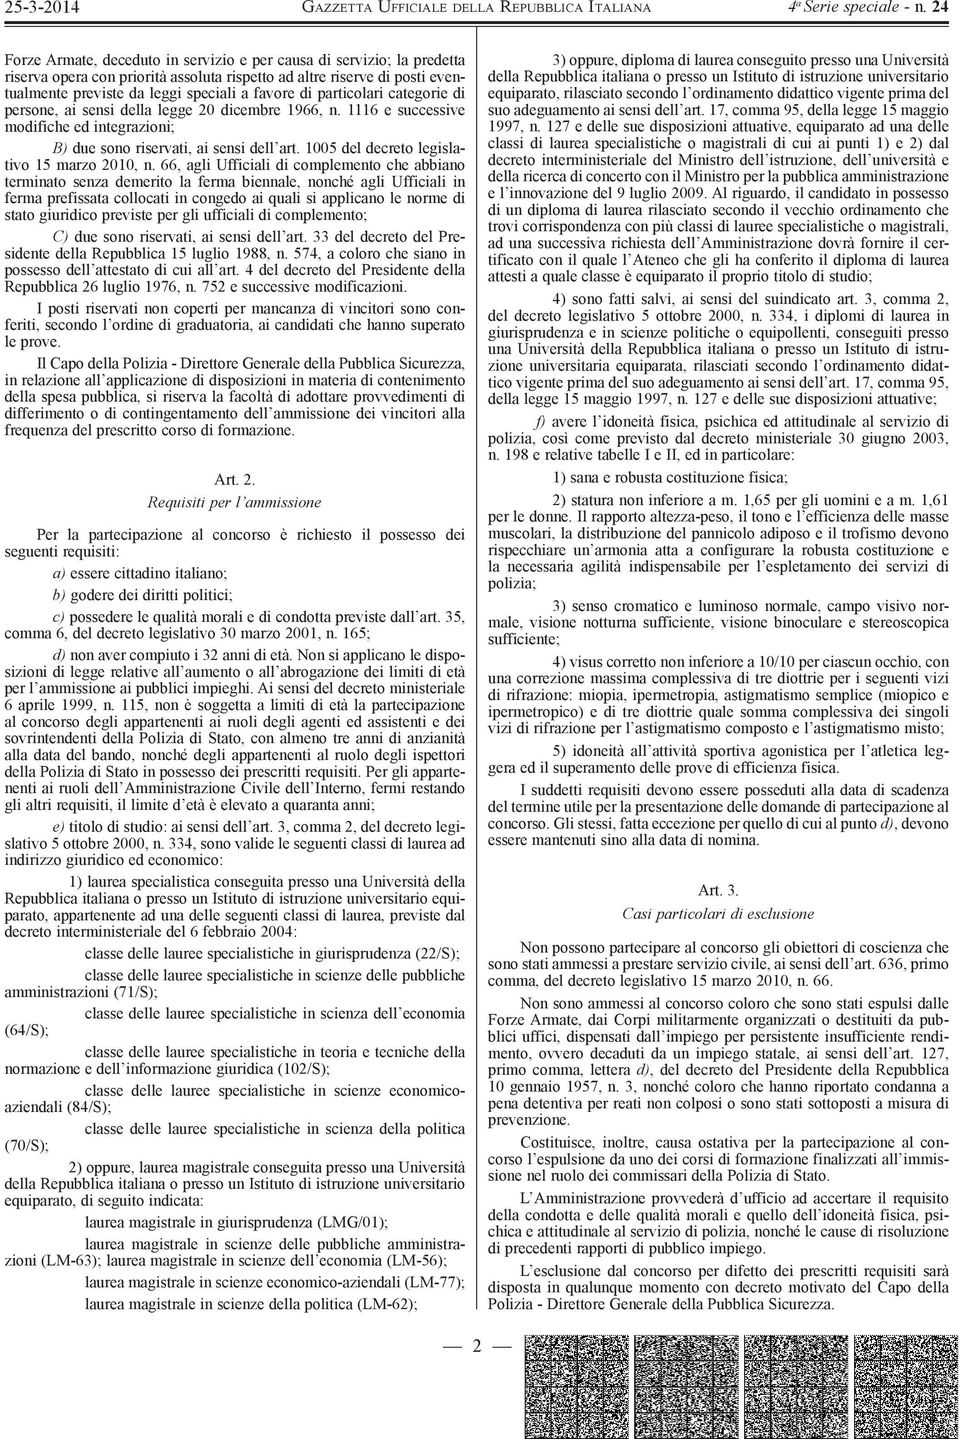 1005 del decreto legislativo 15 marzo 2010, n.